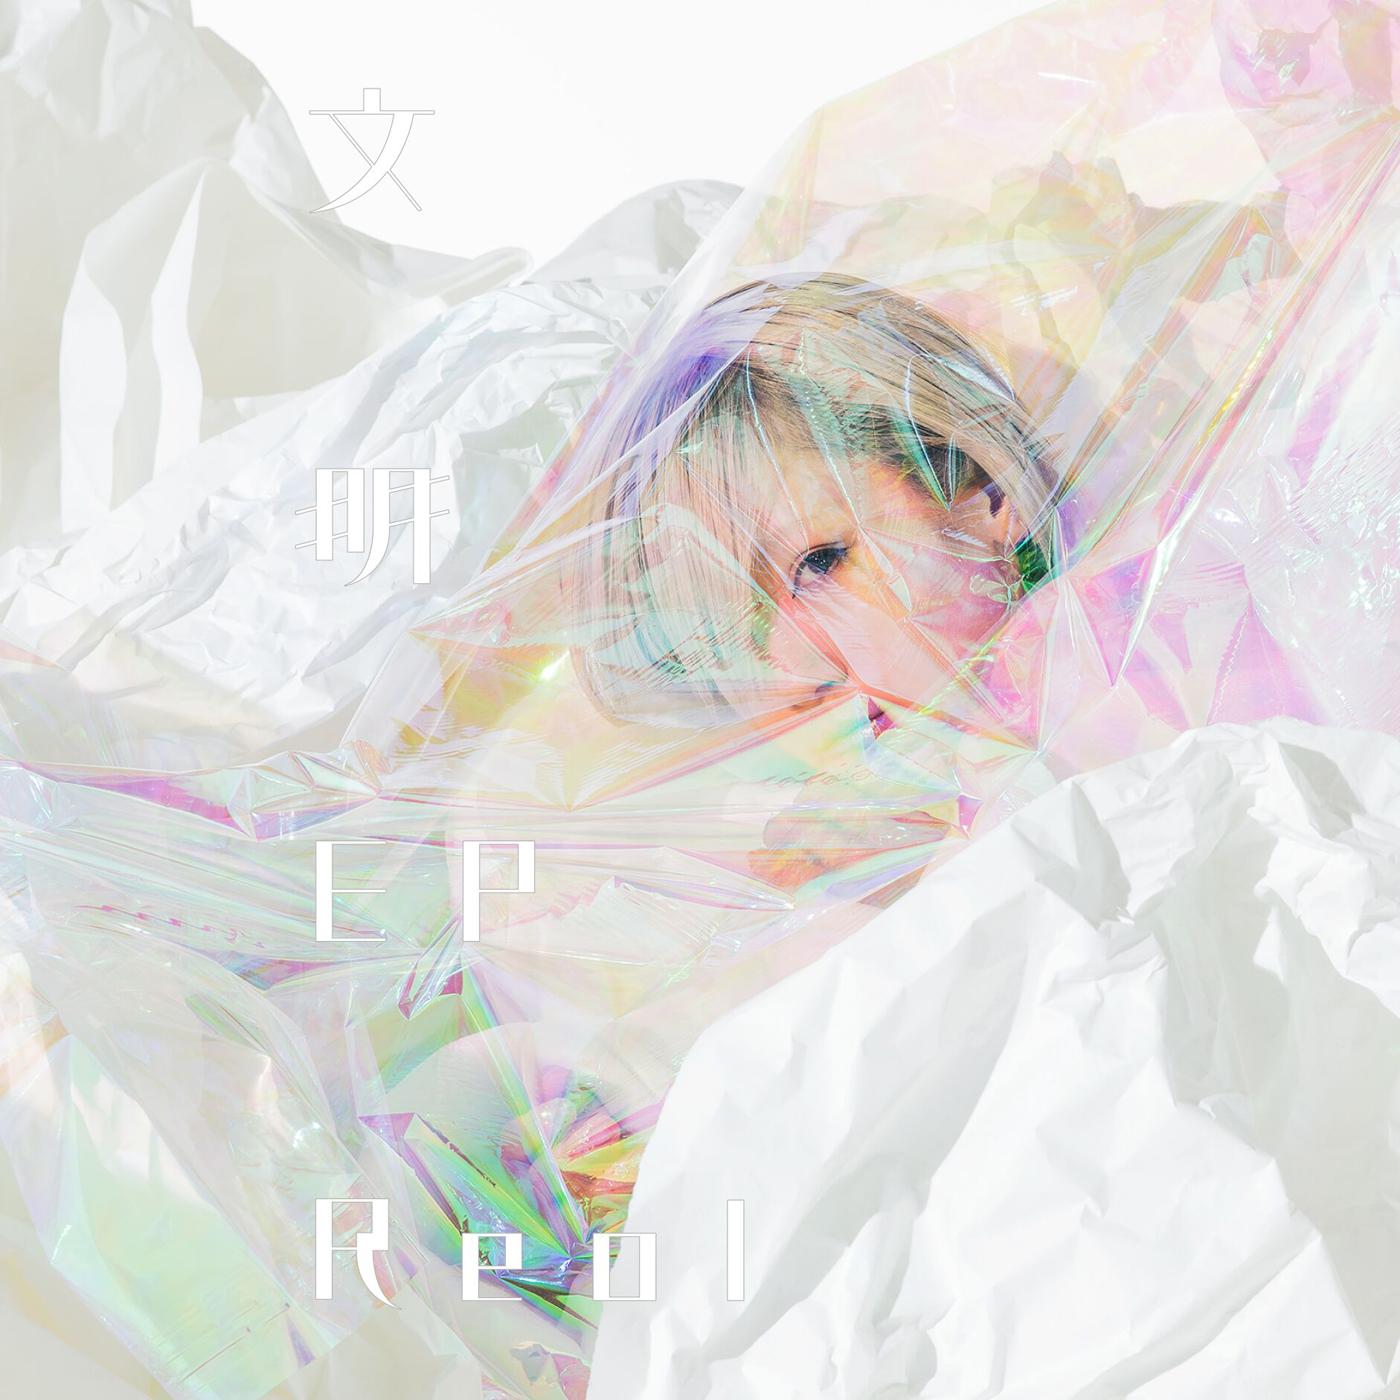 たい歌词 歌手Reol-专辑文明-单曲《たい》LRC歌词下载